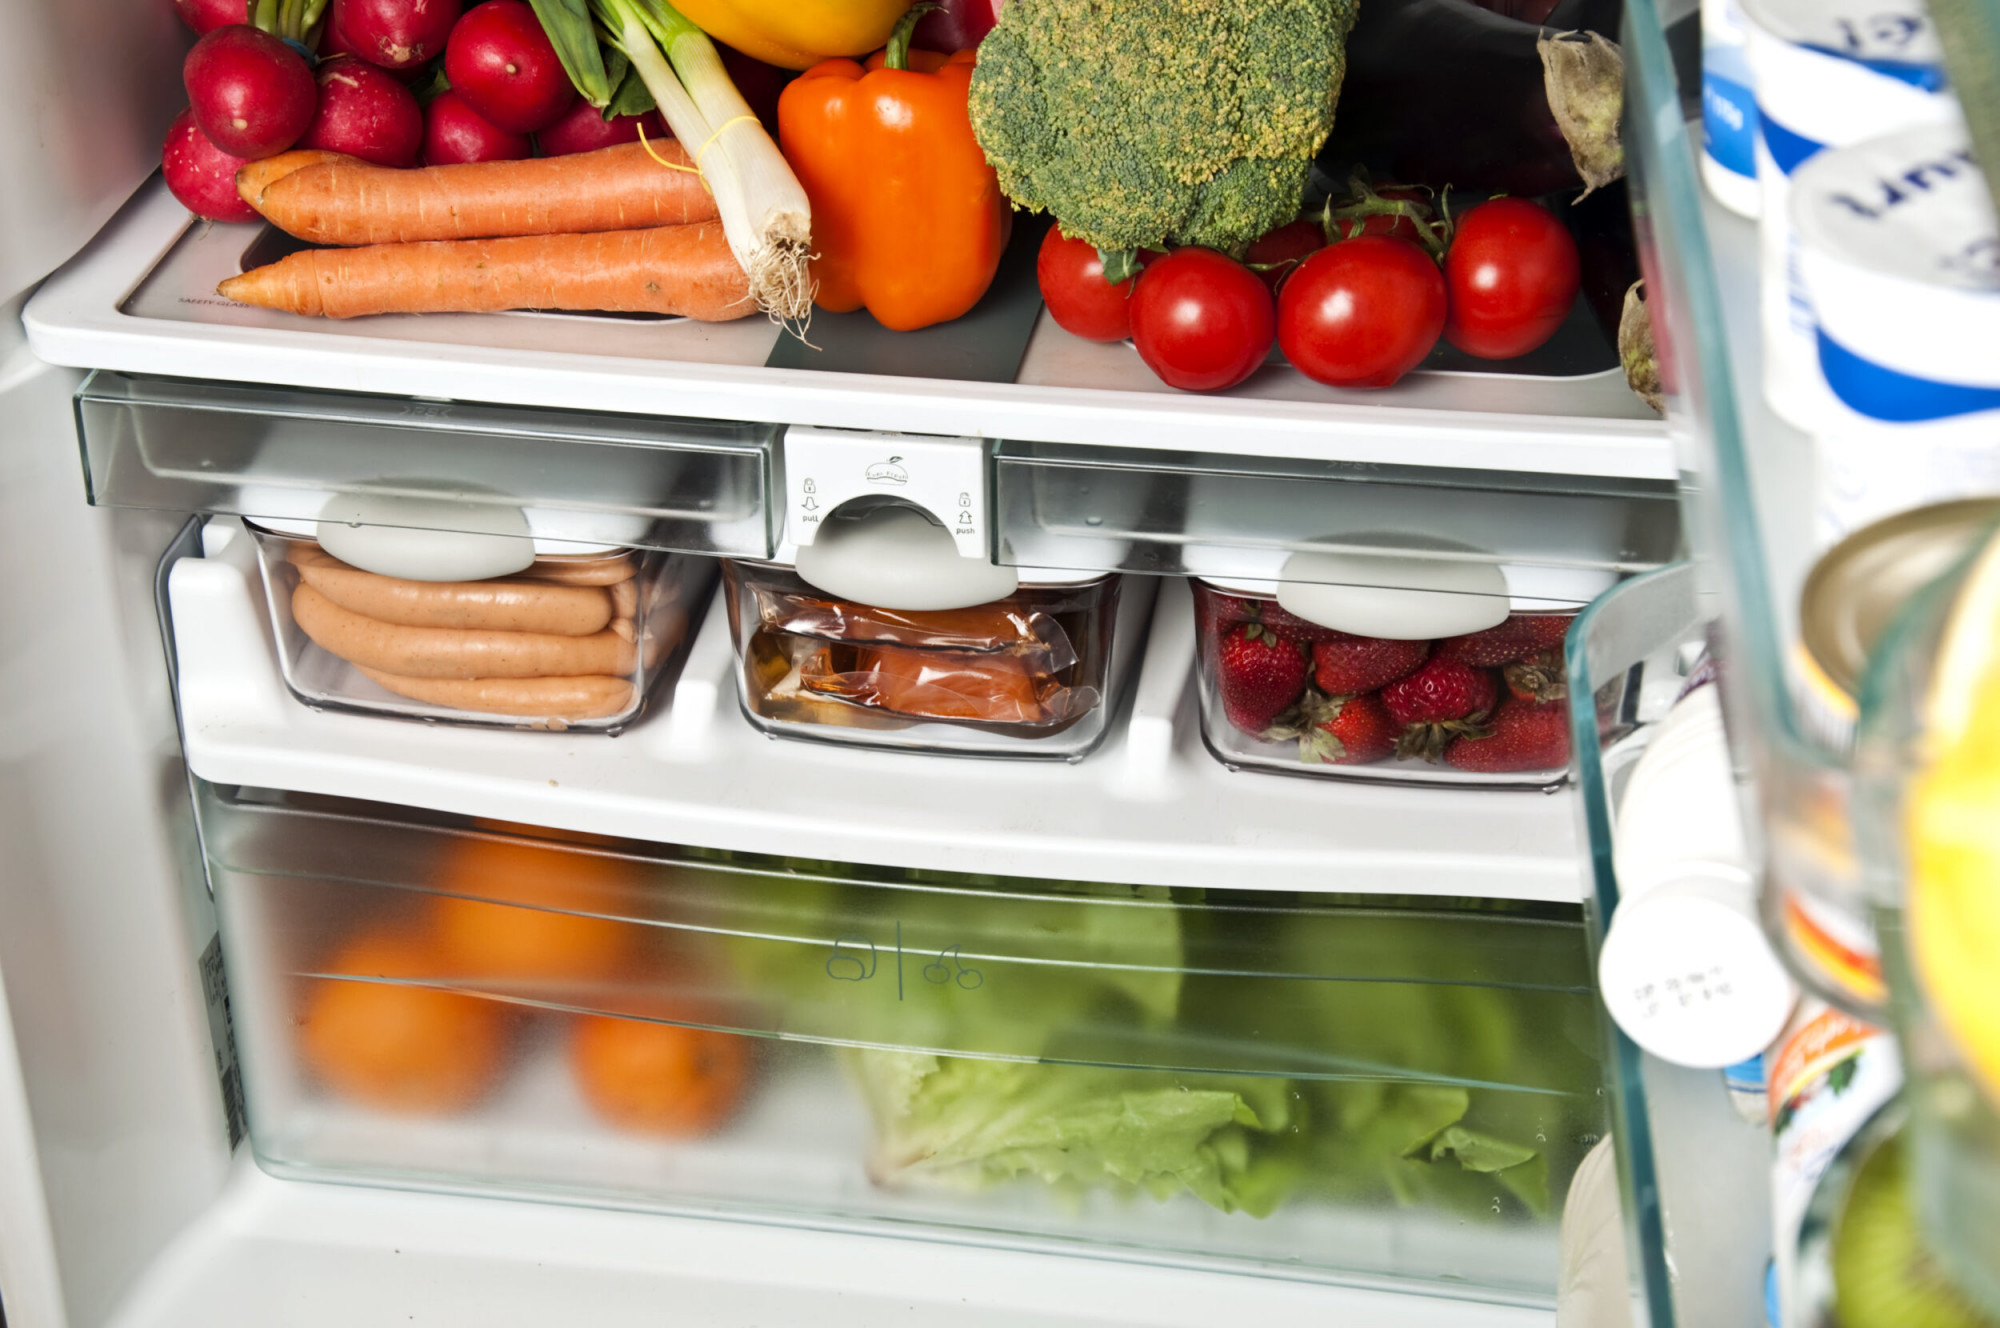 Refrigerator organised clean